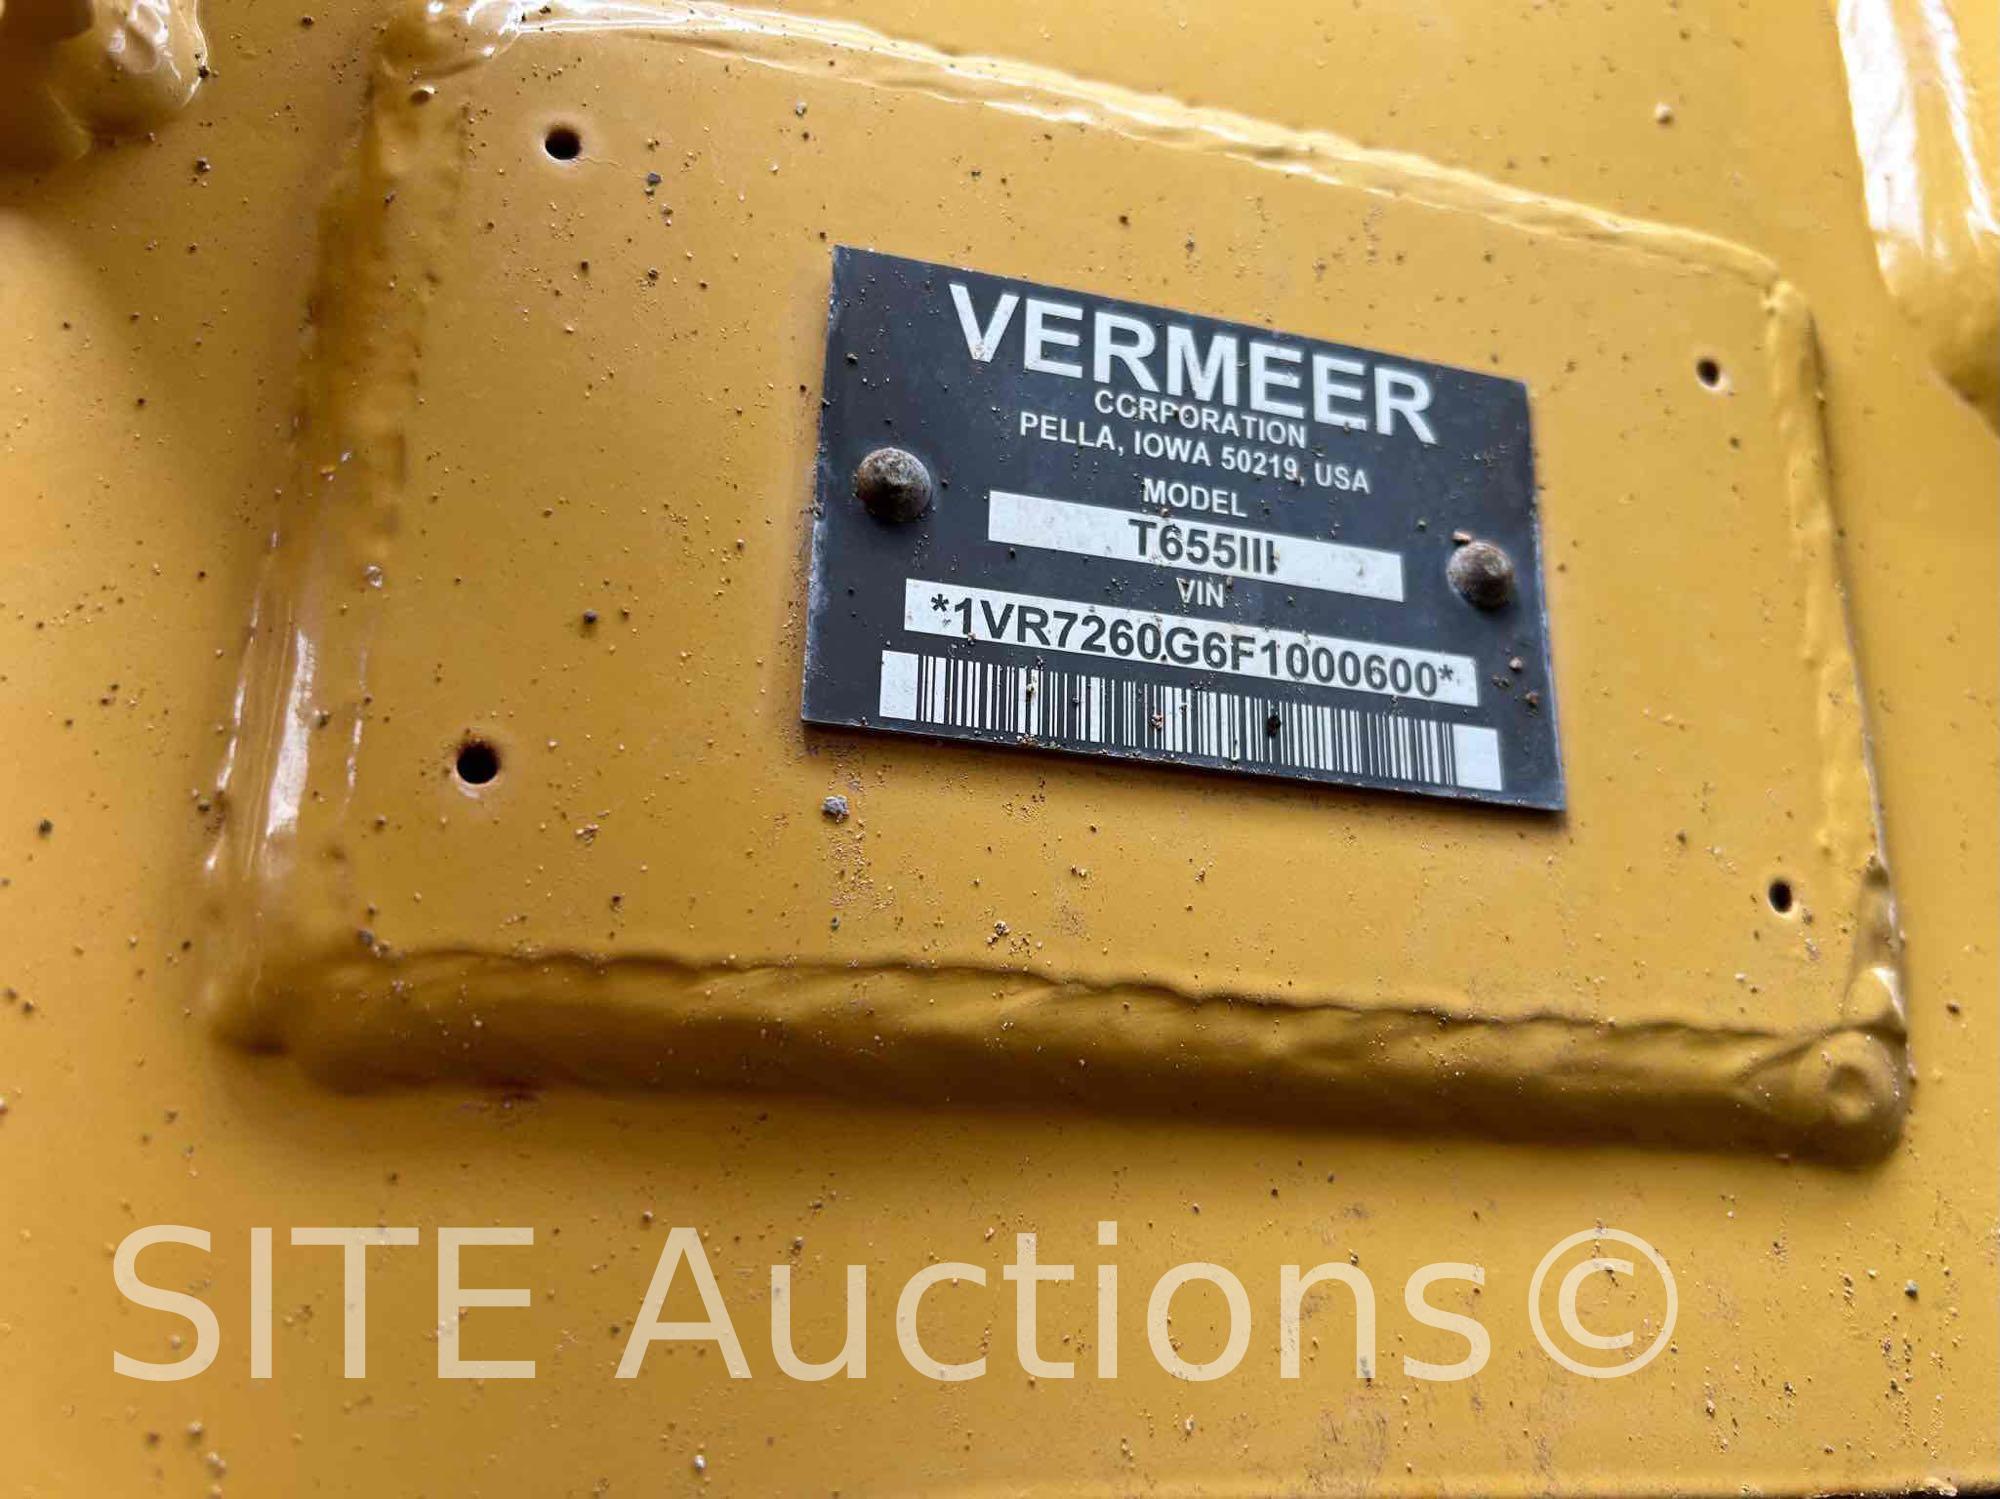 2014 Vermeer T655III Trencher